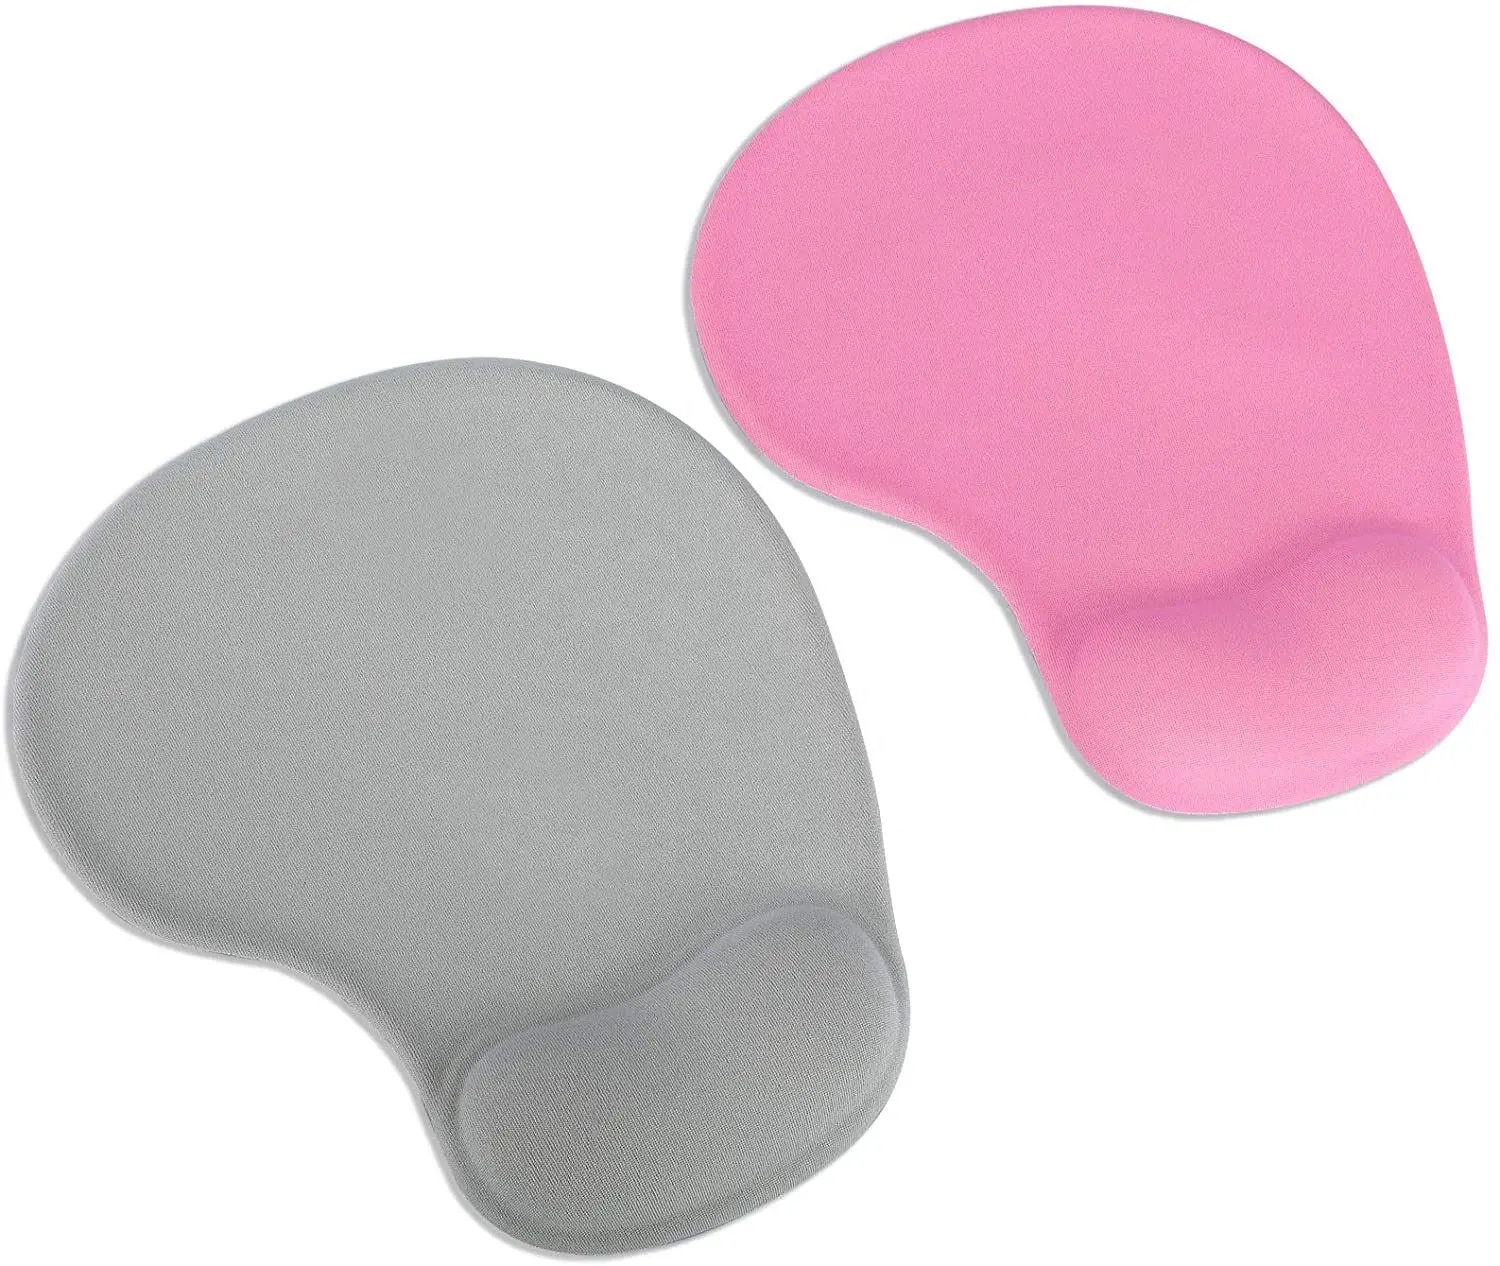 Promotion Ergonomisches Drucken Mouse pad mit Handgelenks tütze Schützen Sie Ihre Handgelenke Gel Handballen auflage Mauspad